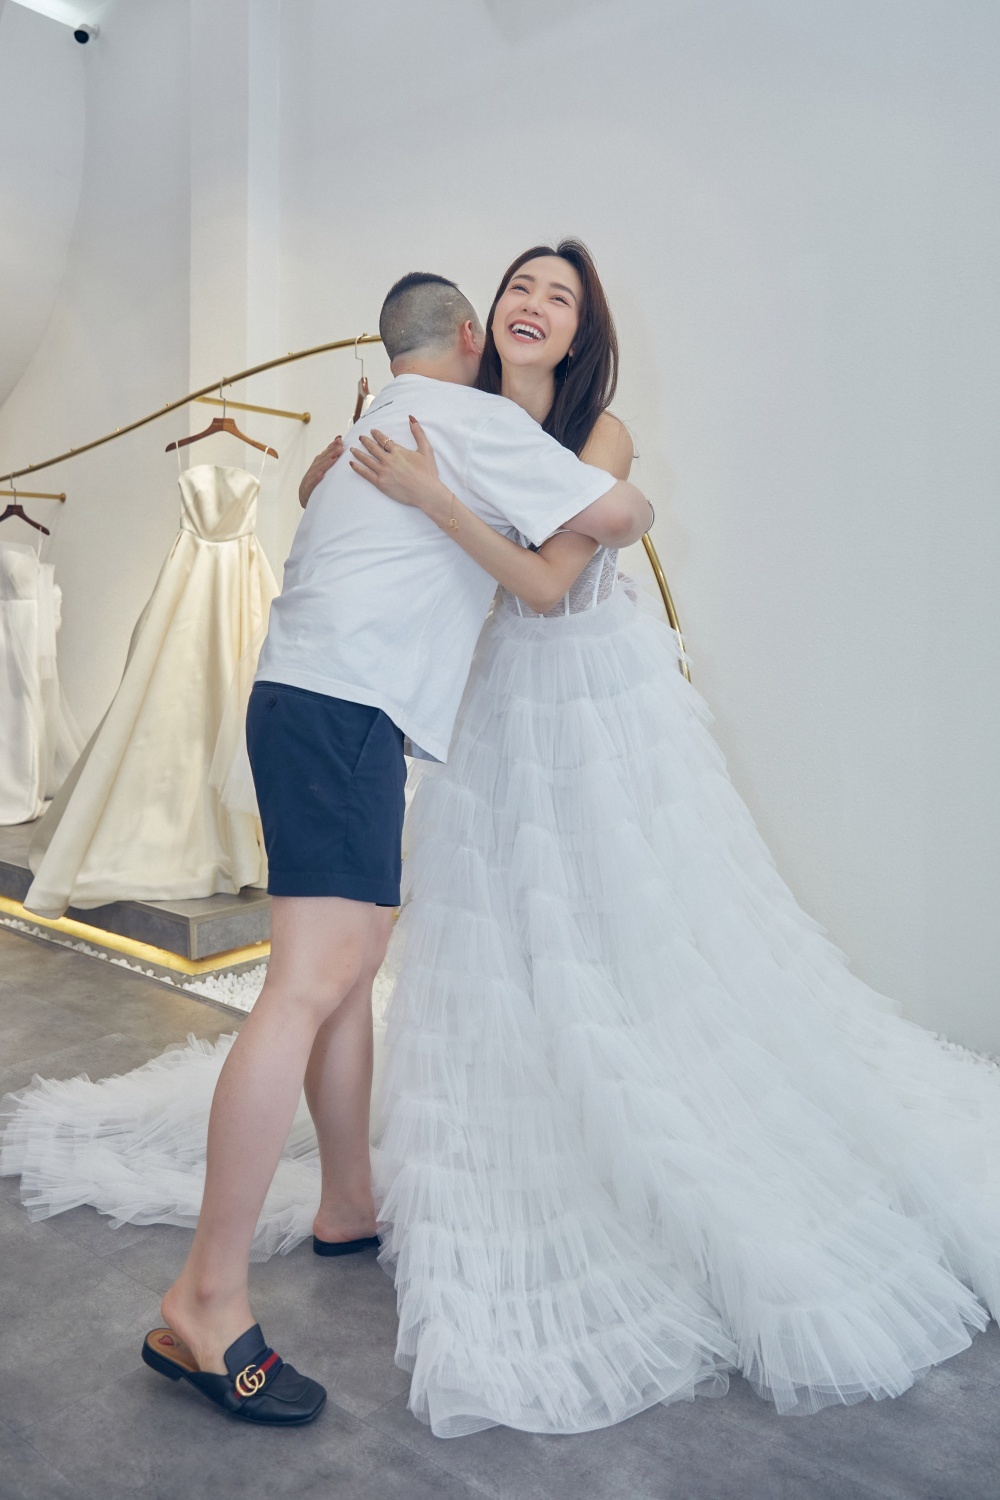  
Minh Hằng vui vẻ khi diện chiếc váy cưới lộng lẫy. (Ảnh: Nhân vật cung cấp)